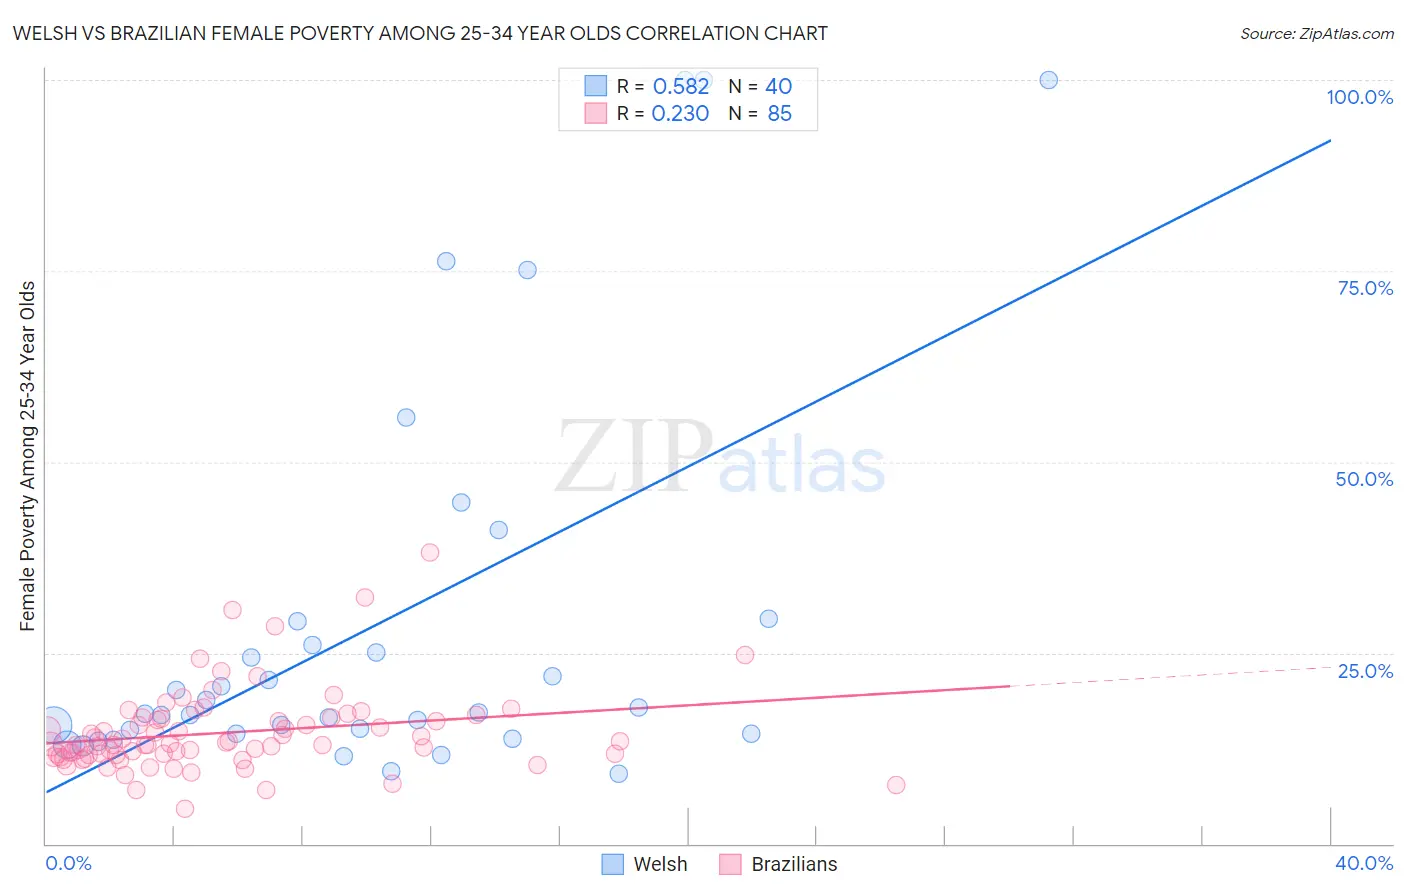 Welsh vs Brazilian Female Poverty Among 25-34 Year Olds